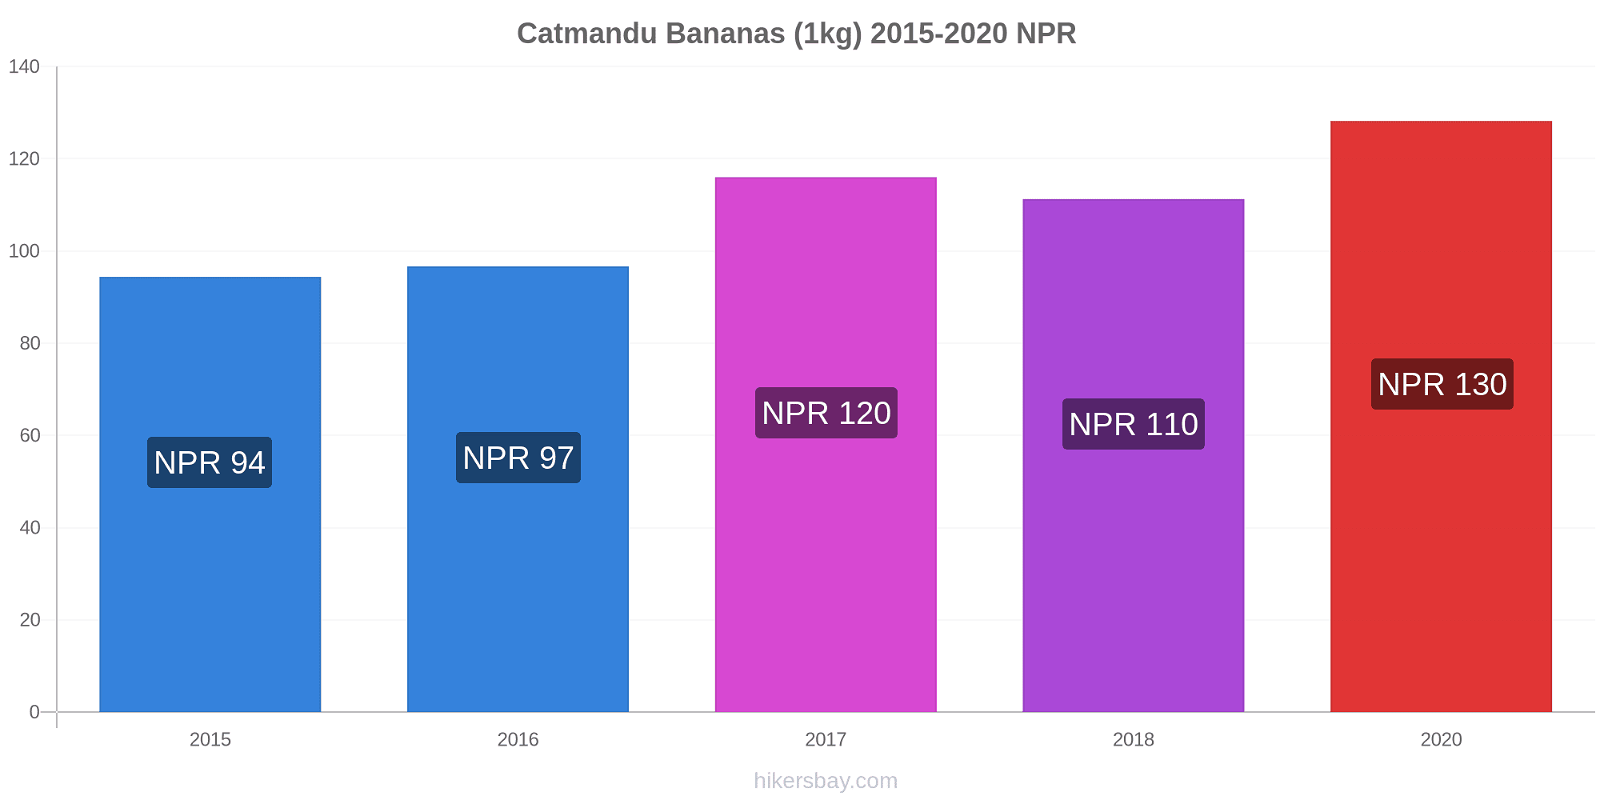 Catmandu variação de preço Banana (1kg) hikersbay.com